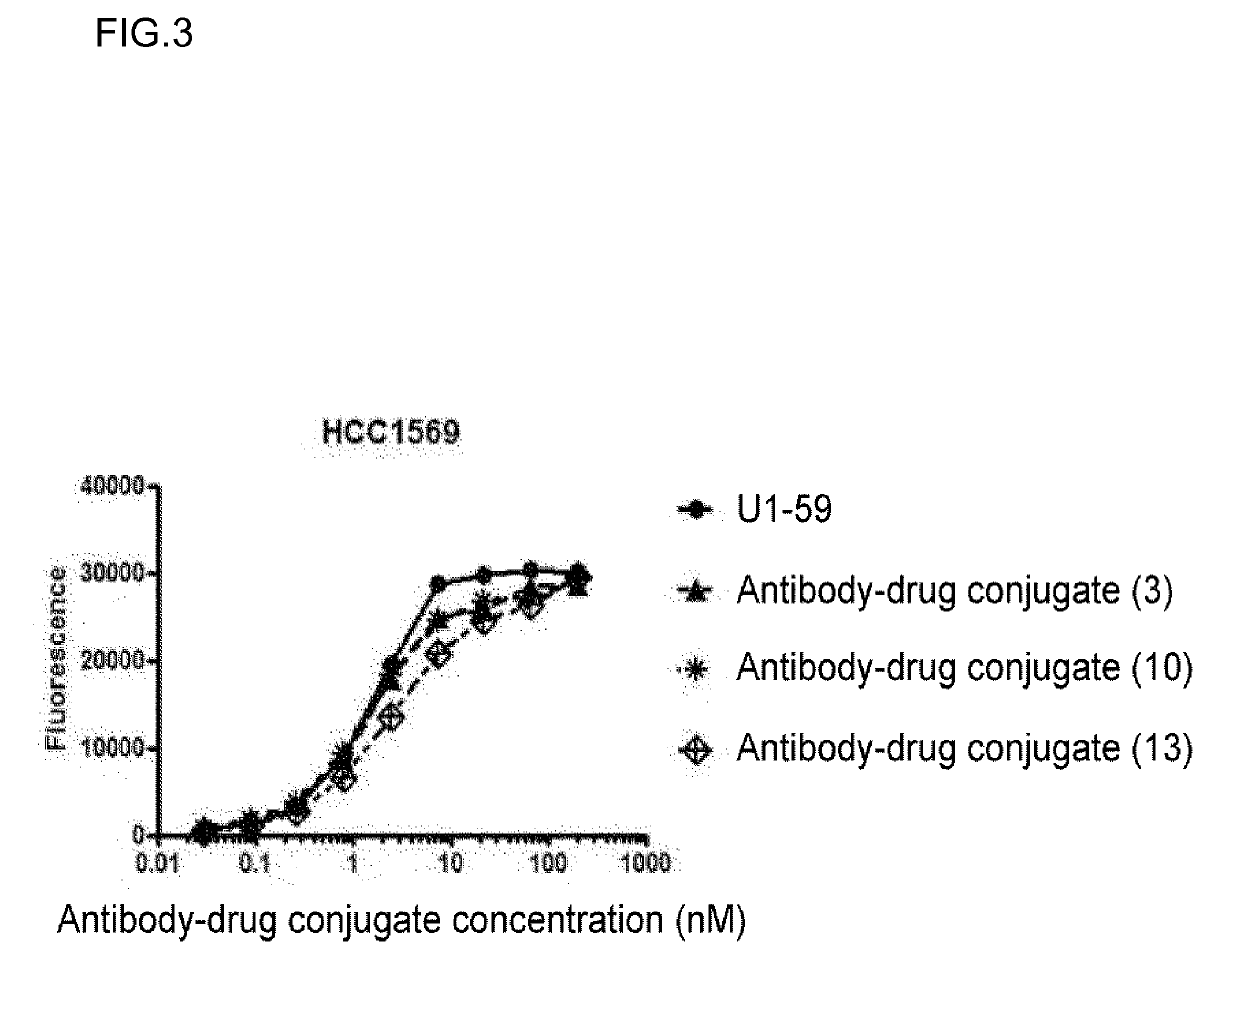 Anti-her3 antibody-drug conjugate